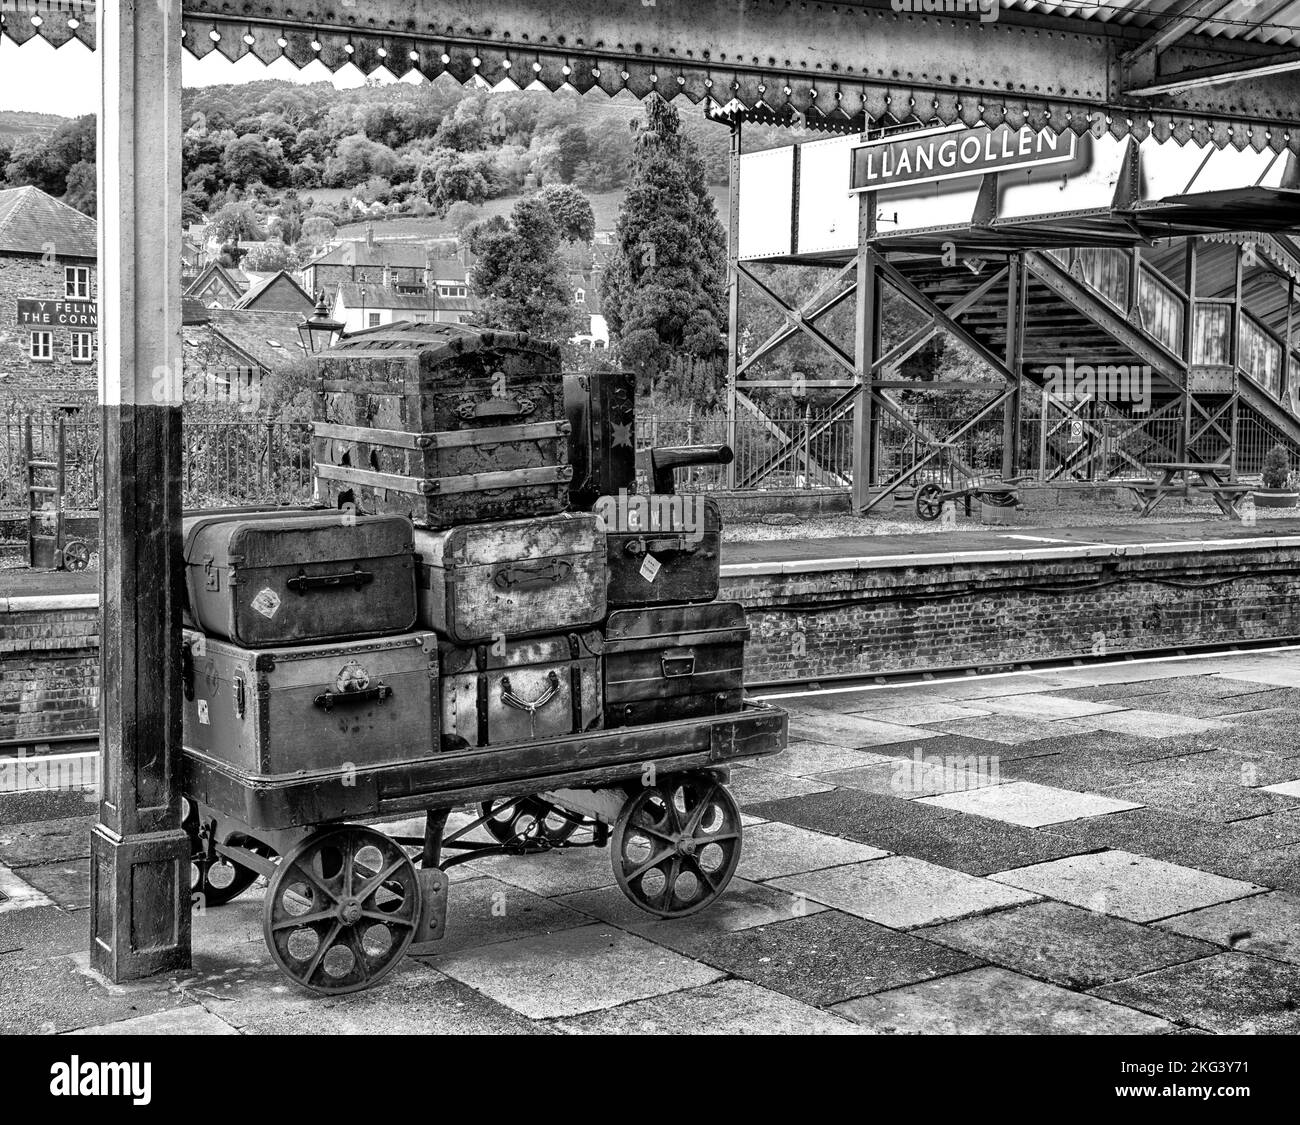 Equipaje de época esperando en la plataforma de la estación de Llangollen Railway Station, Llangollen, Denbighshire, Gales, Reino Unido Foto de stock